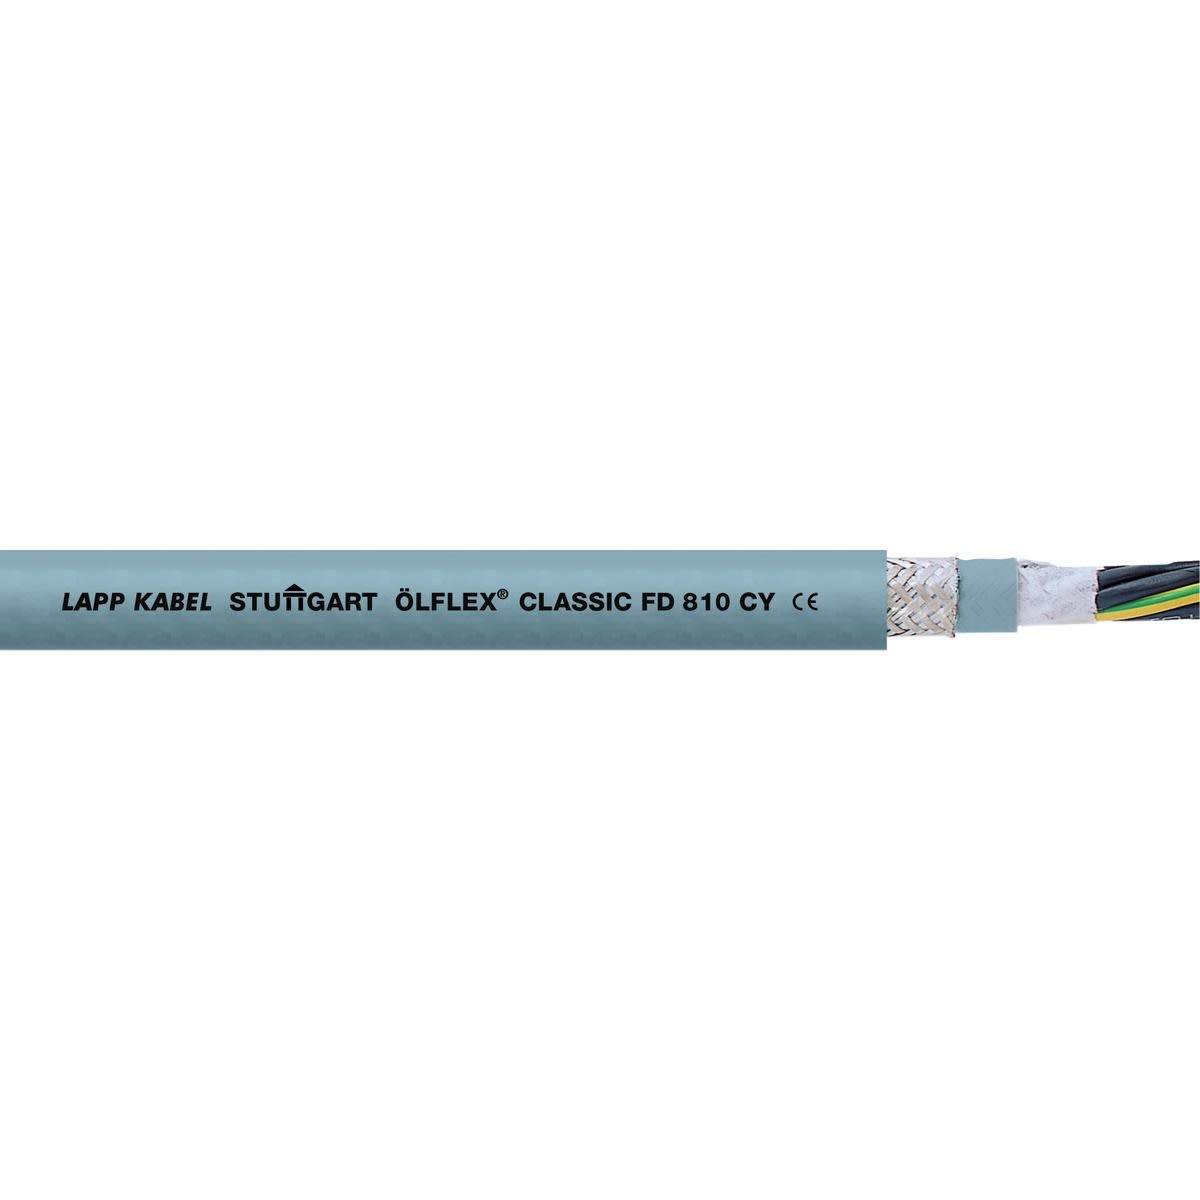 Lapp - ÖLFLEX CLASSIC FD 810 CY 3G1